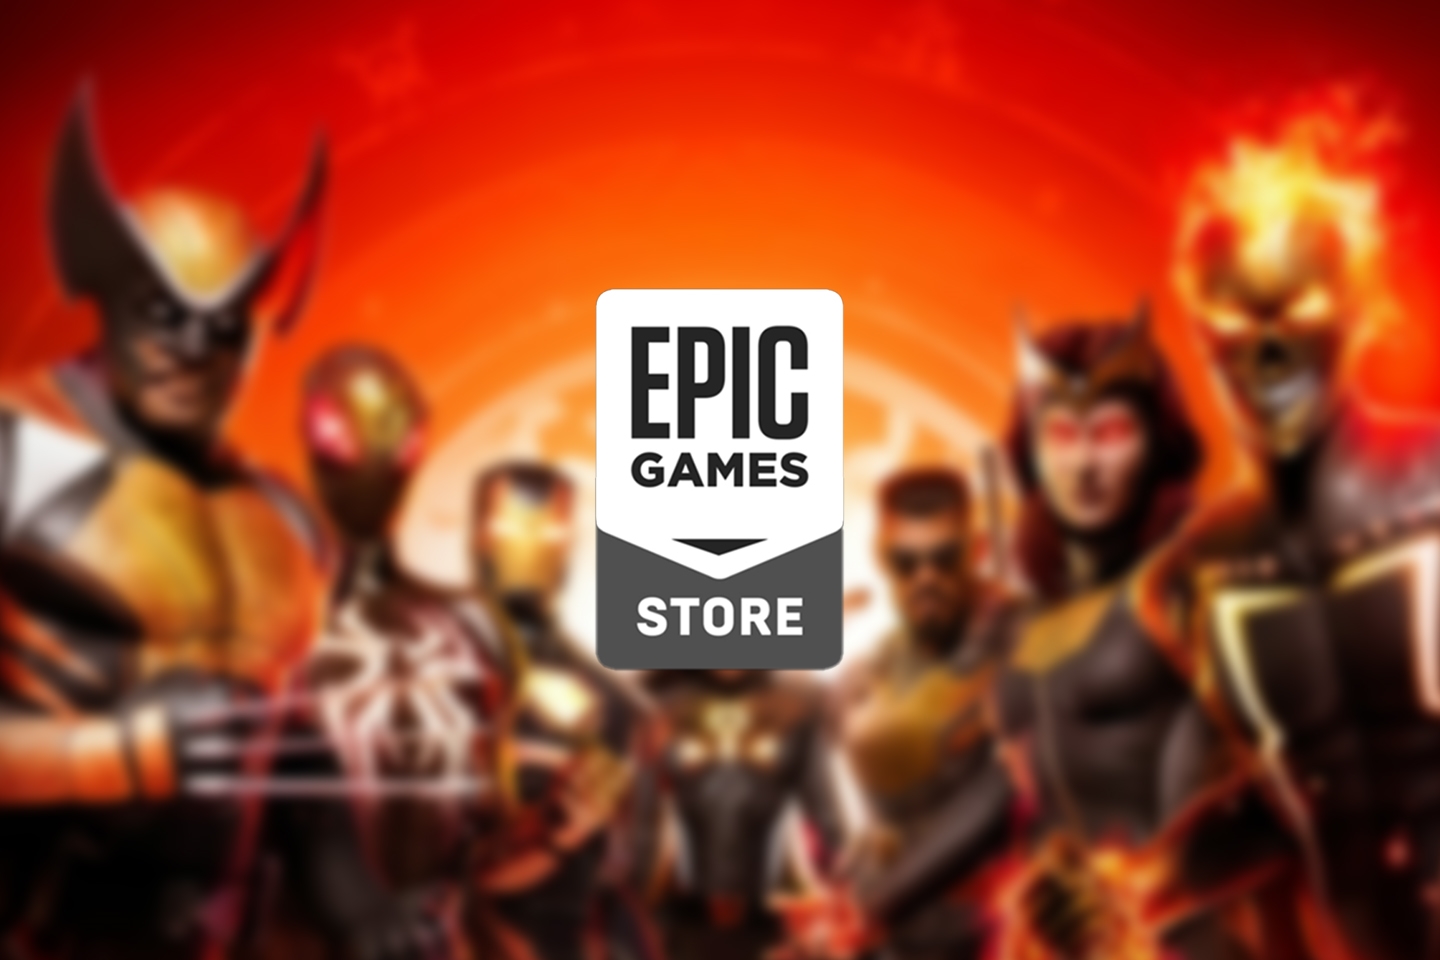 Epic Games libera jogo da Marvel de graça nesta quinta (06); resgate agora!